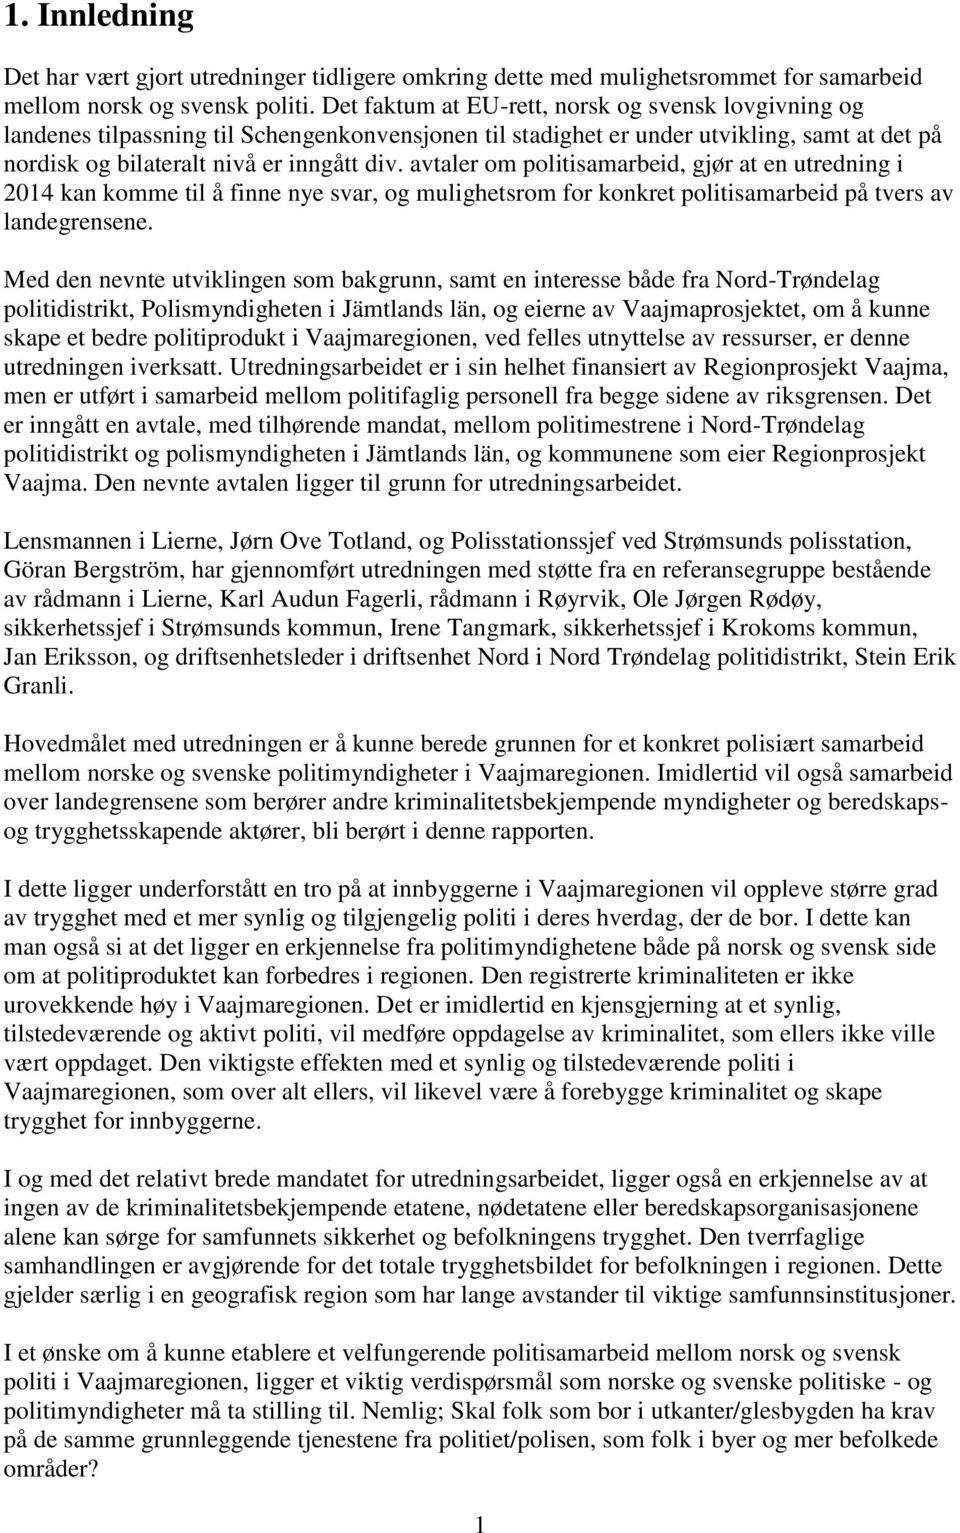 Prosjektrapport. Utredning om mulighetene for økt Samarbeid mellom norsk og  svensk politi i Vaajmaregionen. - PDF Free Download